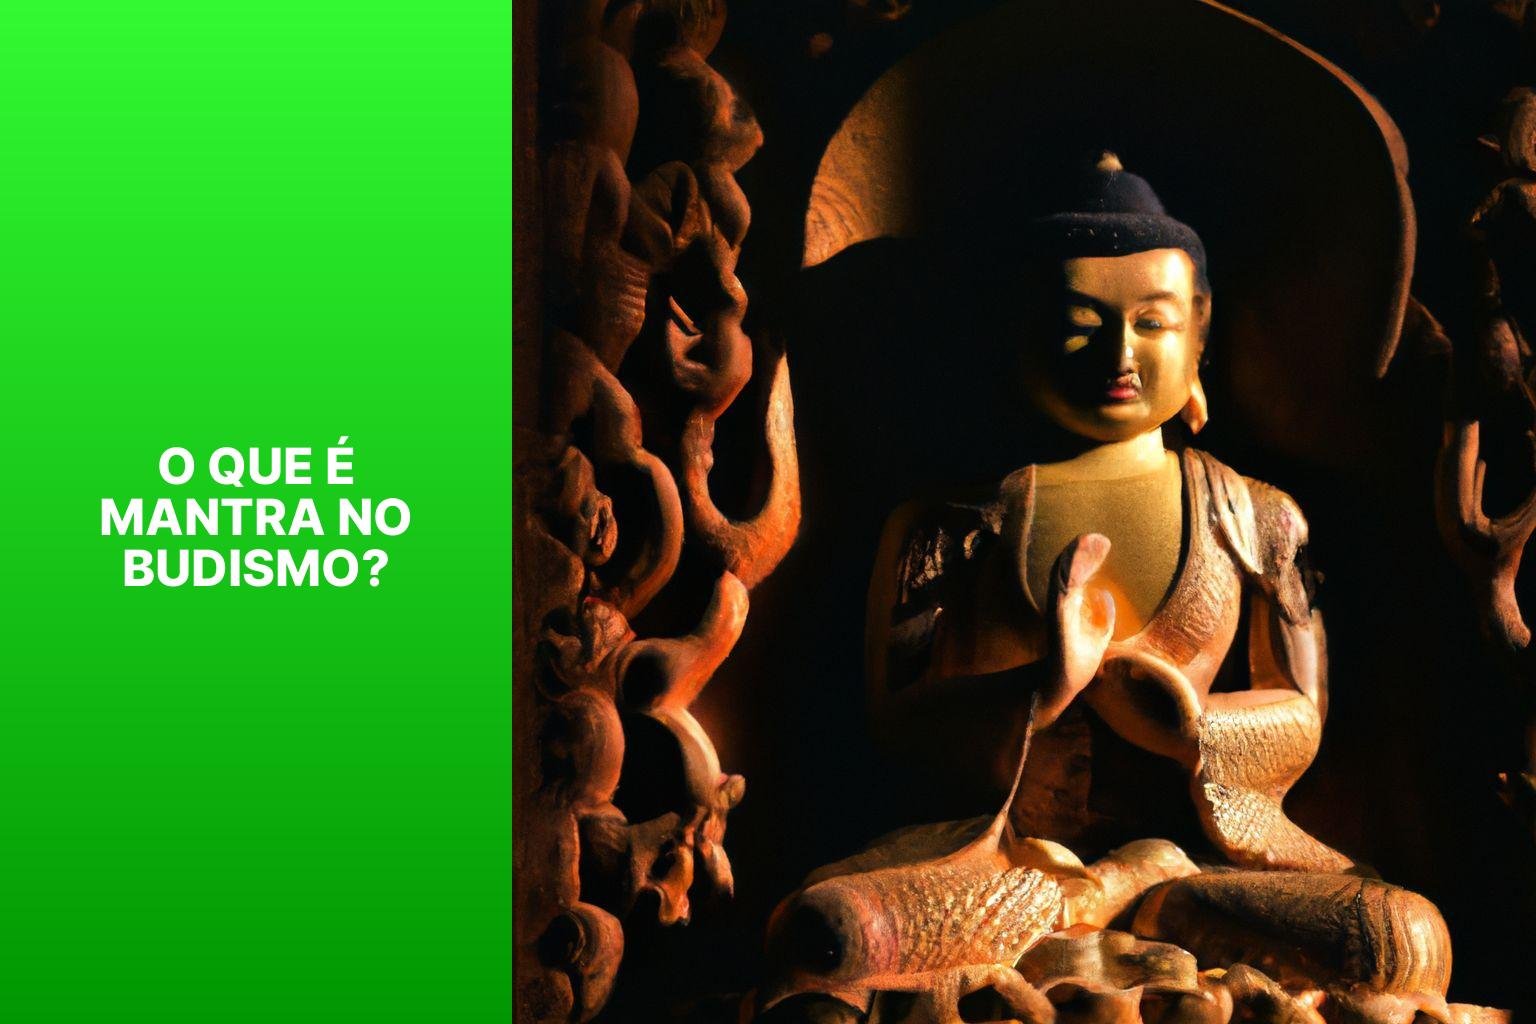 O que é Mantra no Budismo? - Budismo Mantra 